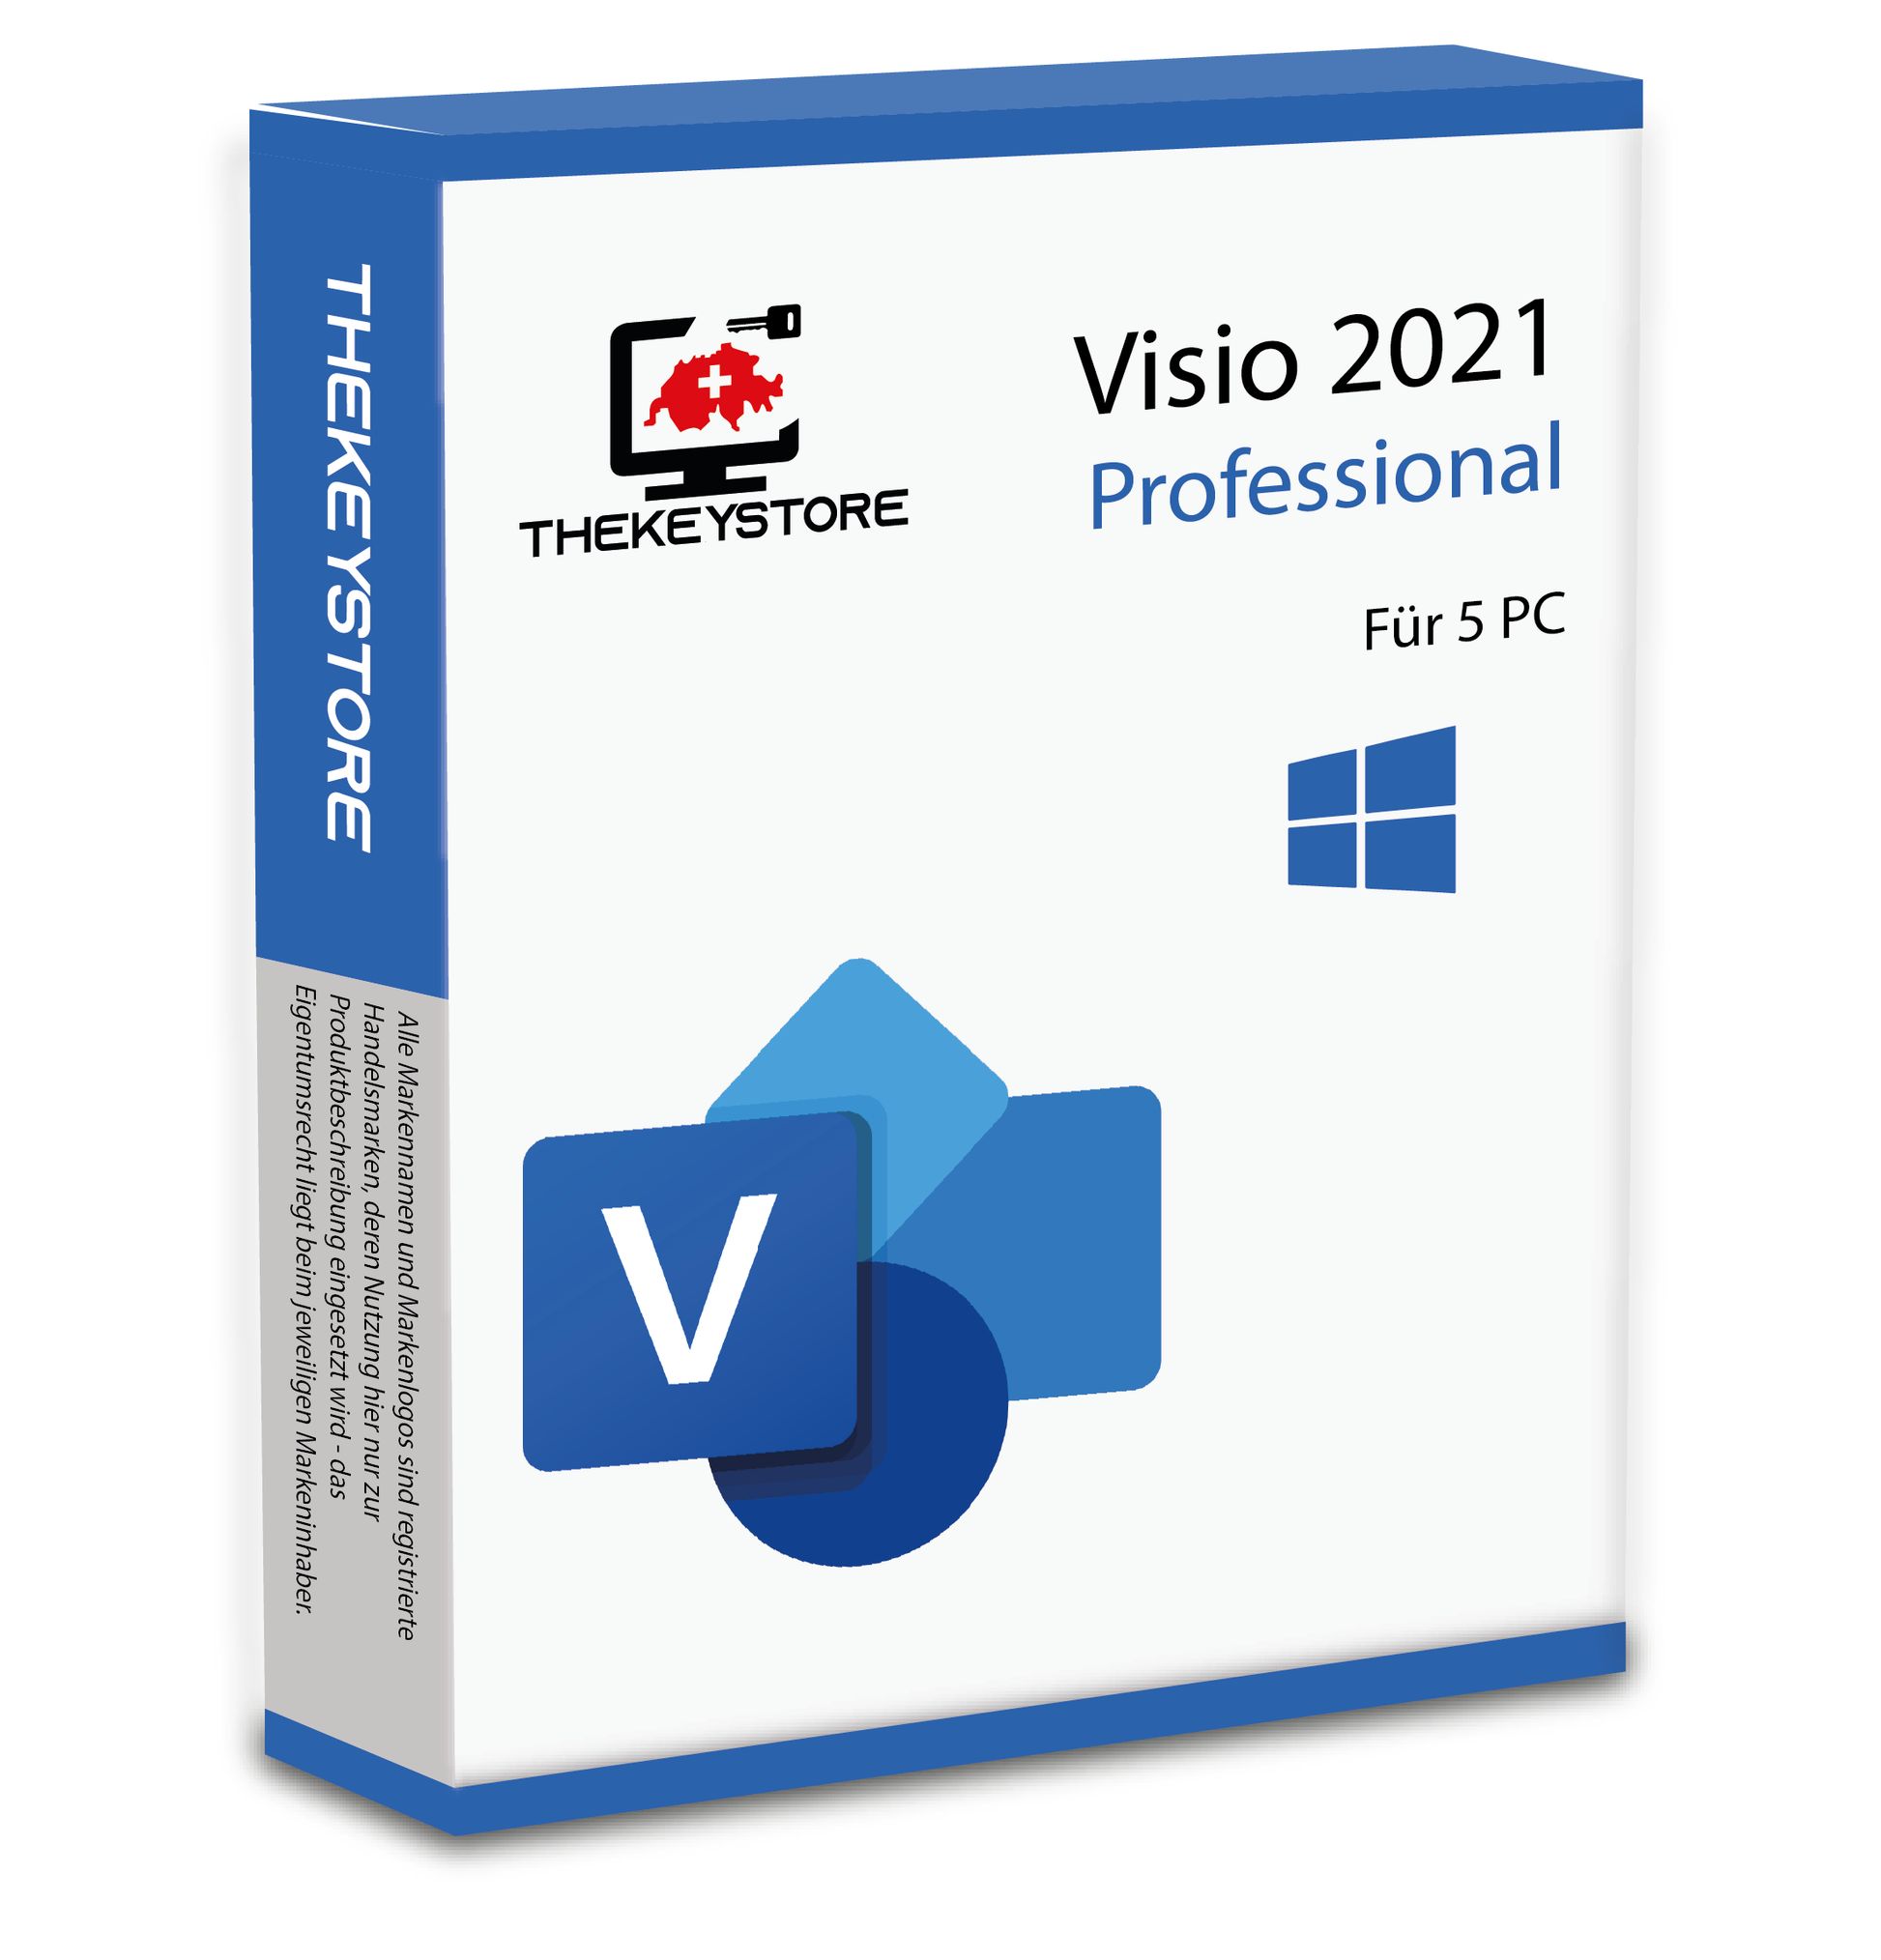 Microsoft Visio 2021 Professional - Für 5 PC - TheKeyStore Schweiz